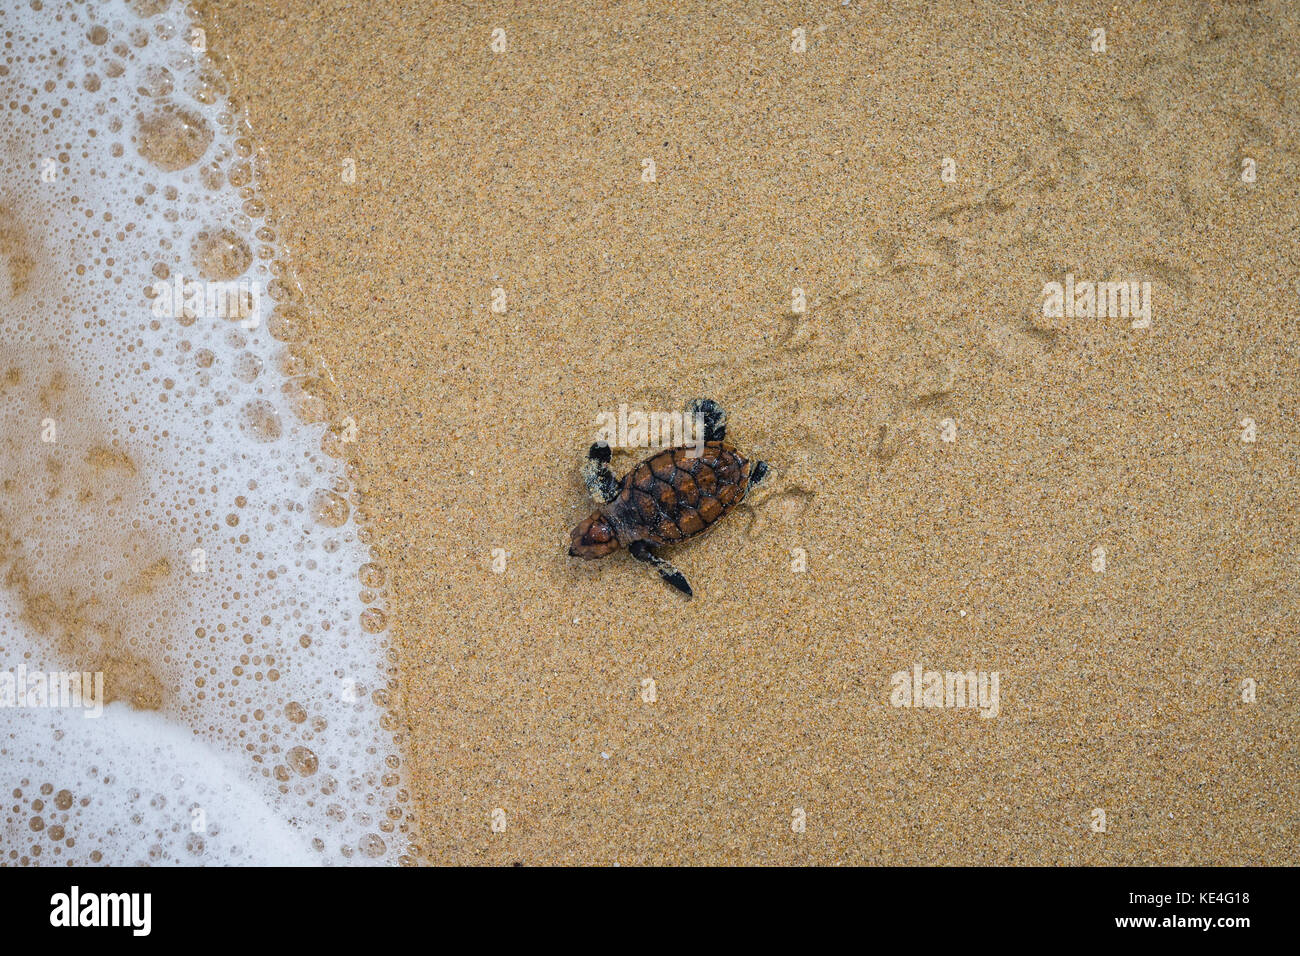 Ein Baby hawksbill Schildkröte macht seinen Weg in den Ozean nach dem Schlupf auf Mullins Strand auf der karibischen Insel Barbados. Stockfoto